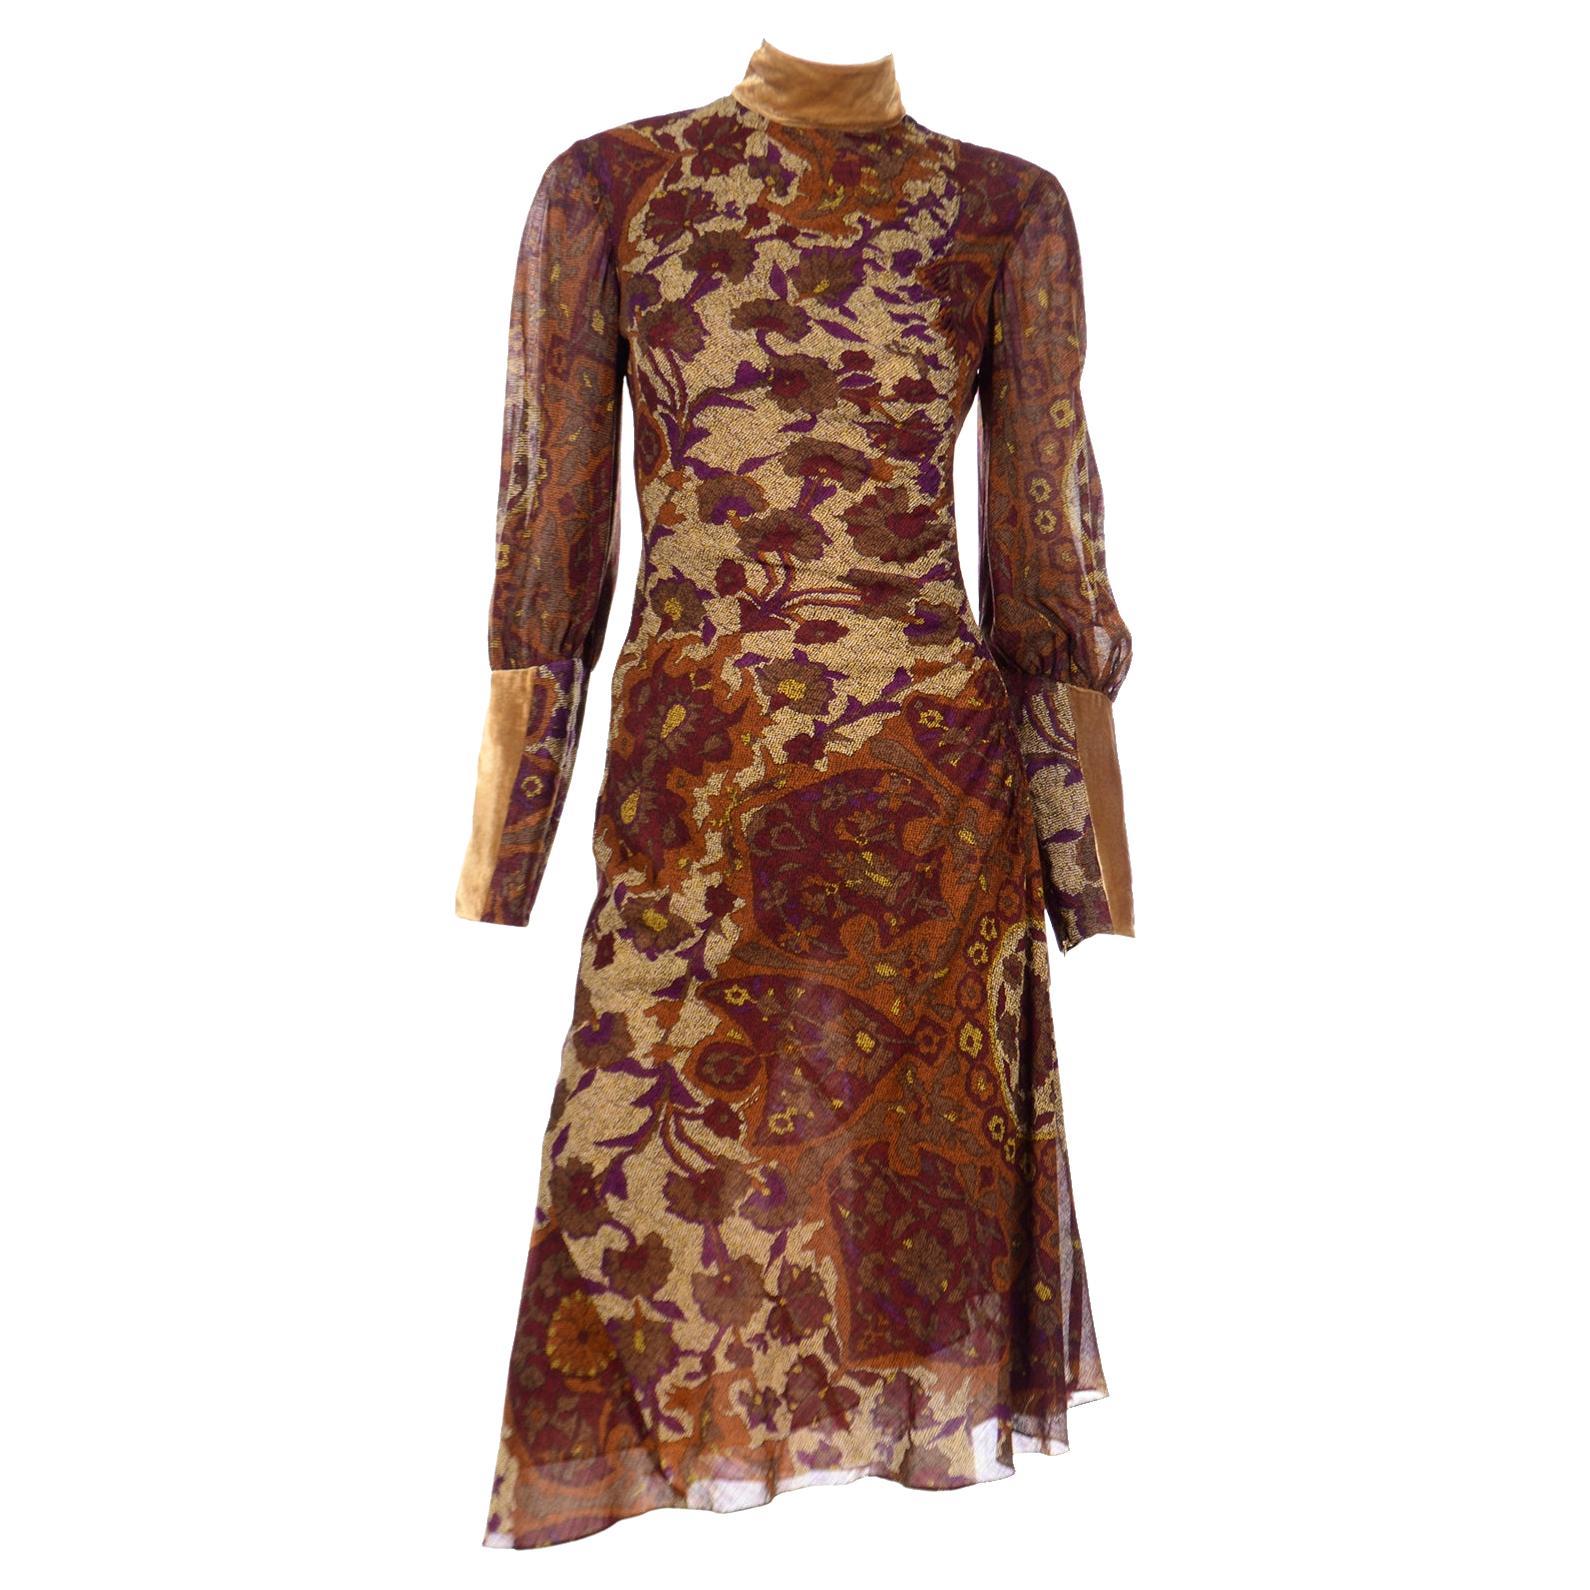 Kenzo - Robe vintage luxueuse marron prune et dorée à imprimé floral avec bordure en velours doré